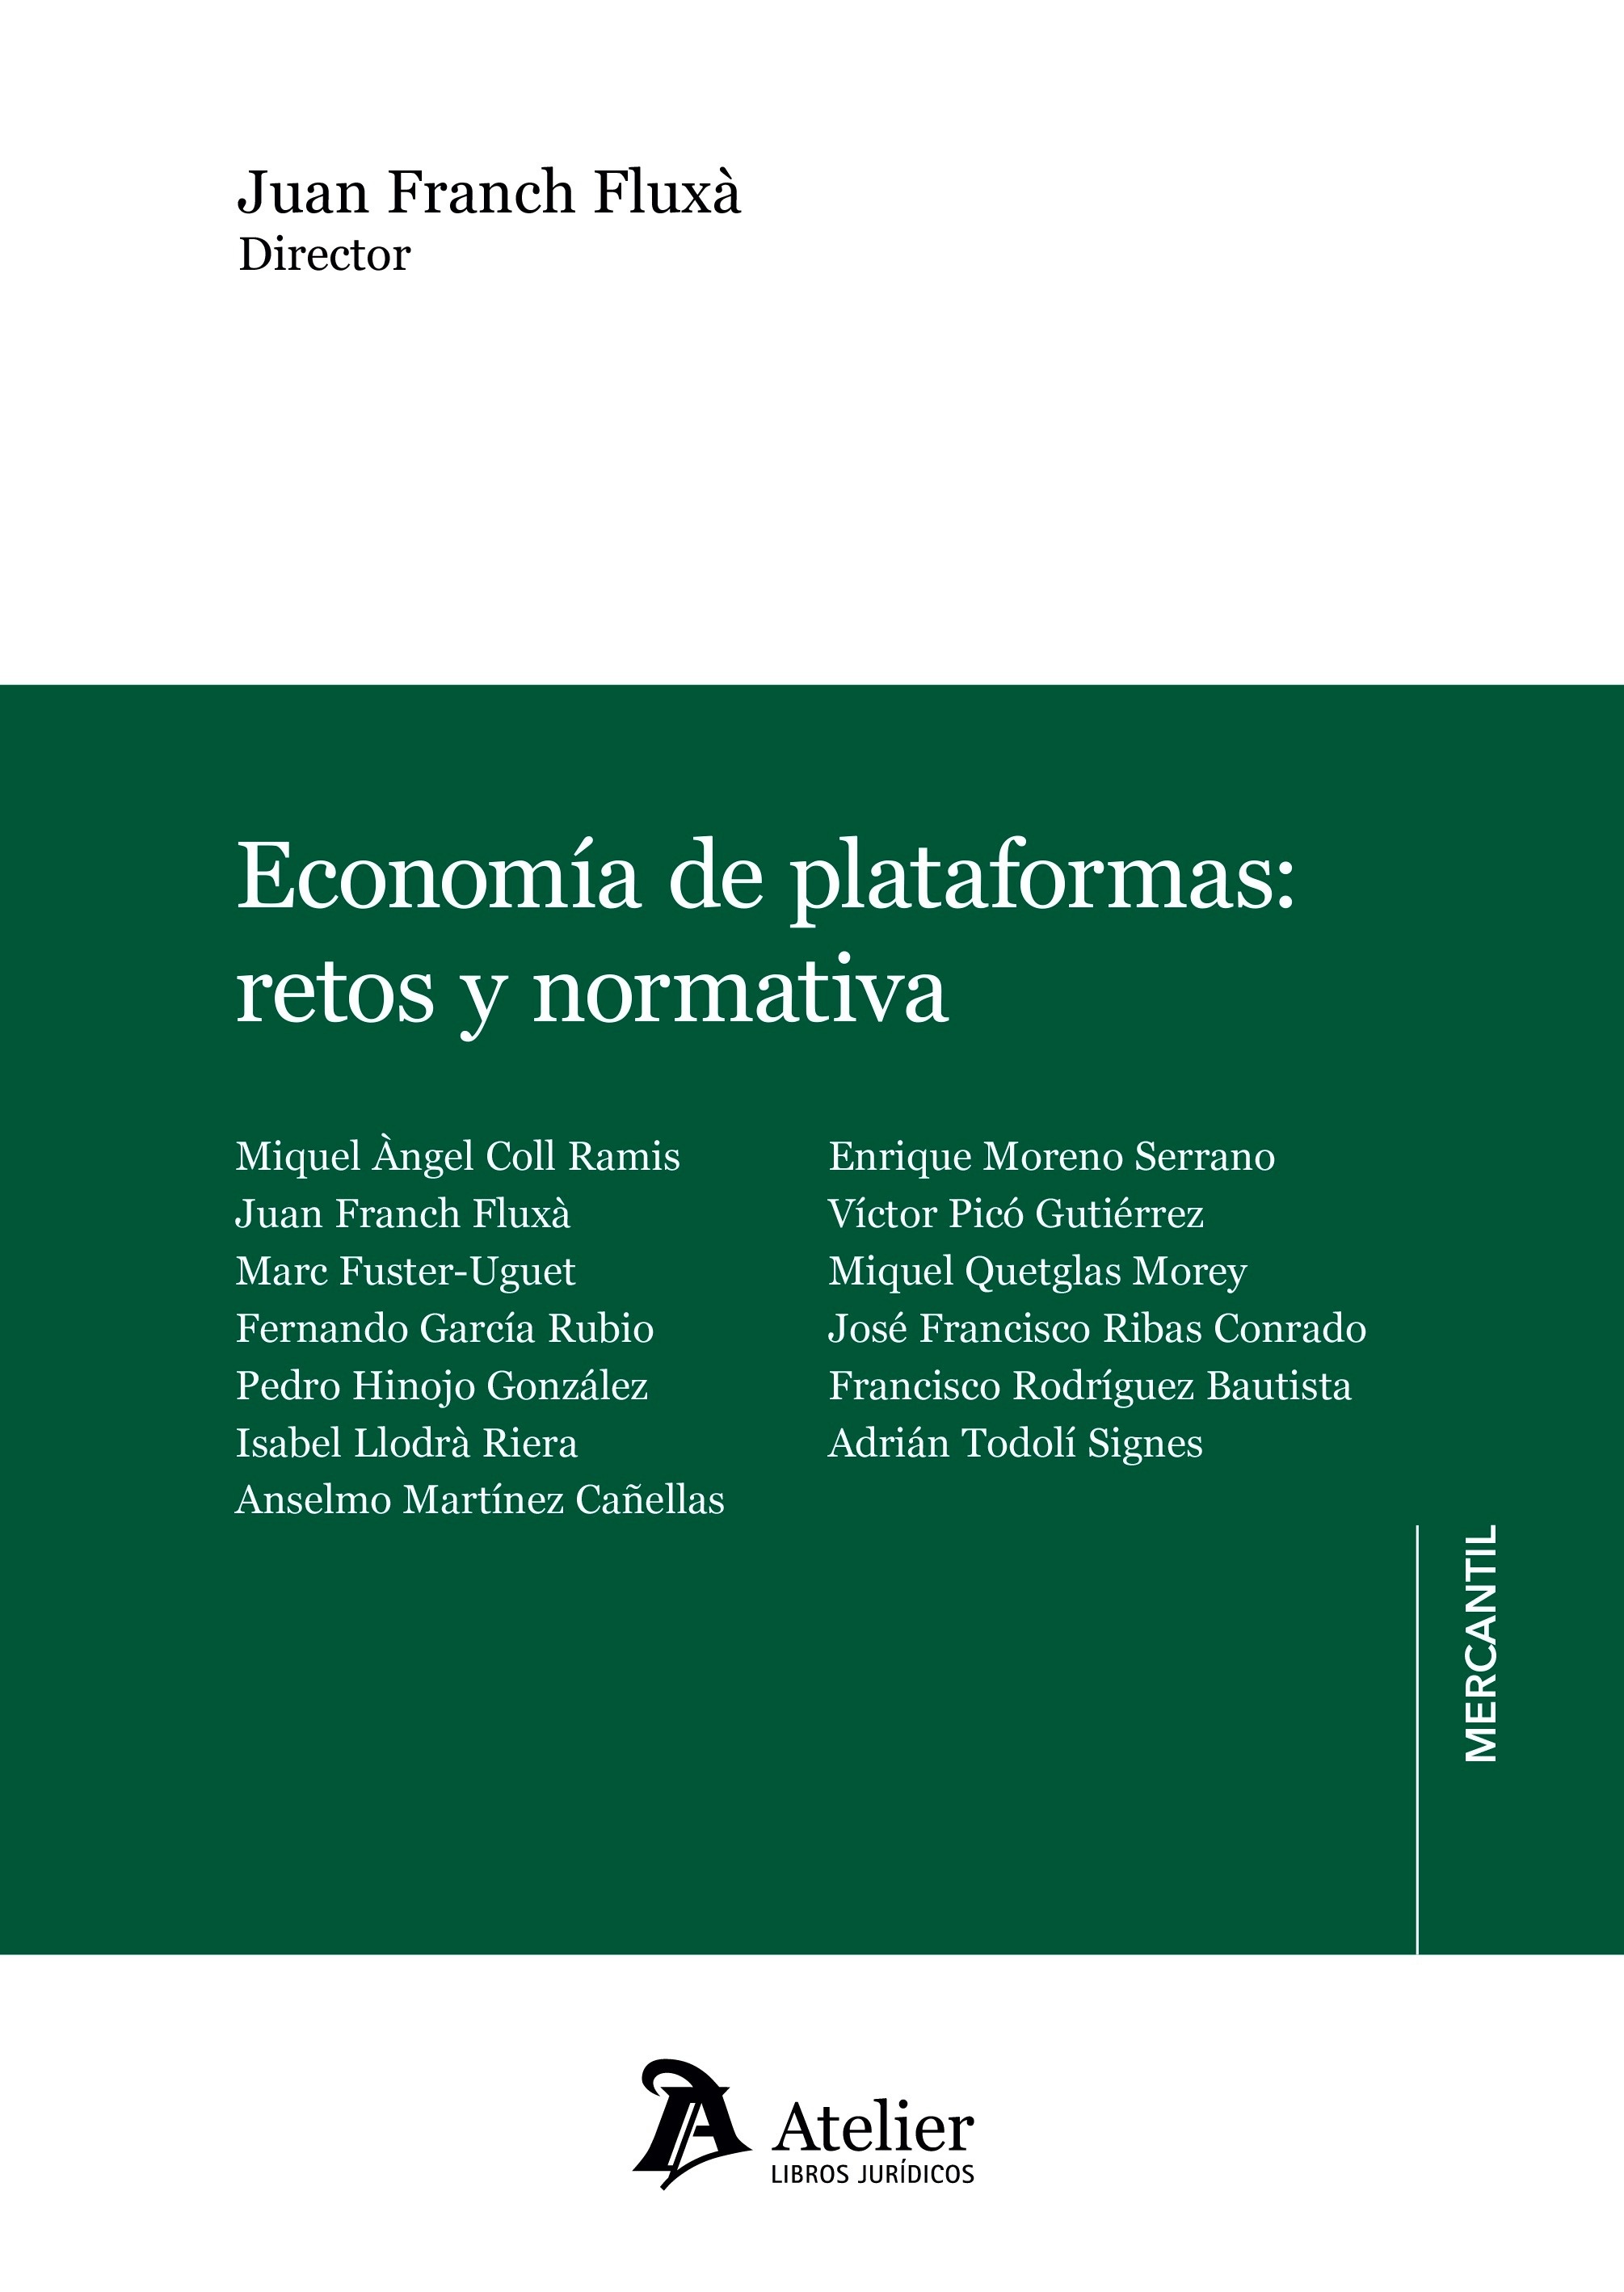 Economía de plataformas:retos y normativa